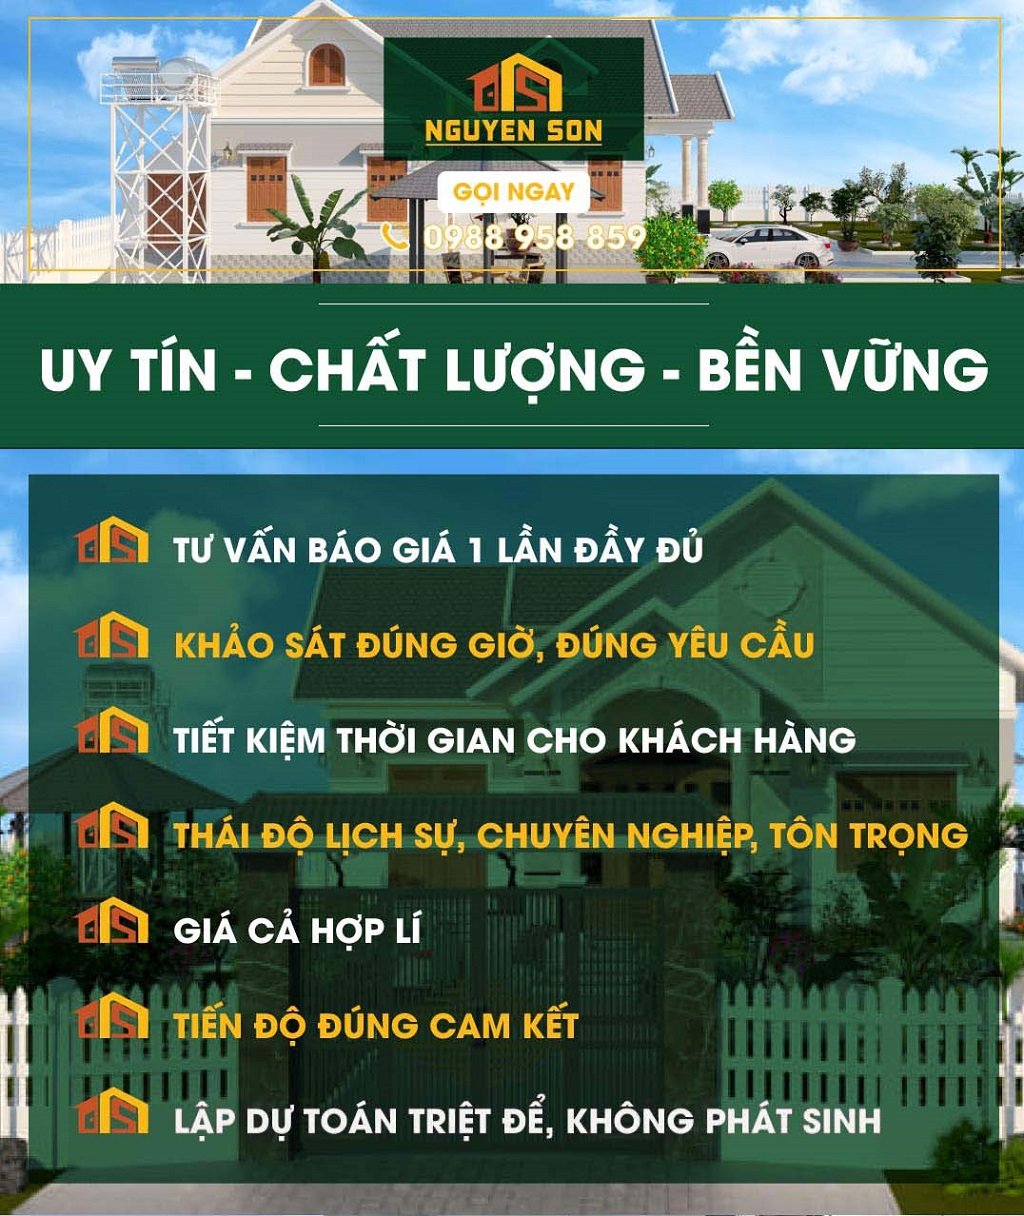 Xây dựng Nguyễn Sơn - Đơn vị xây dựng nhà trọn gói uy tín